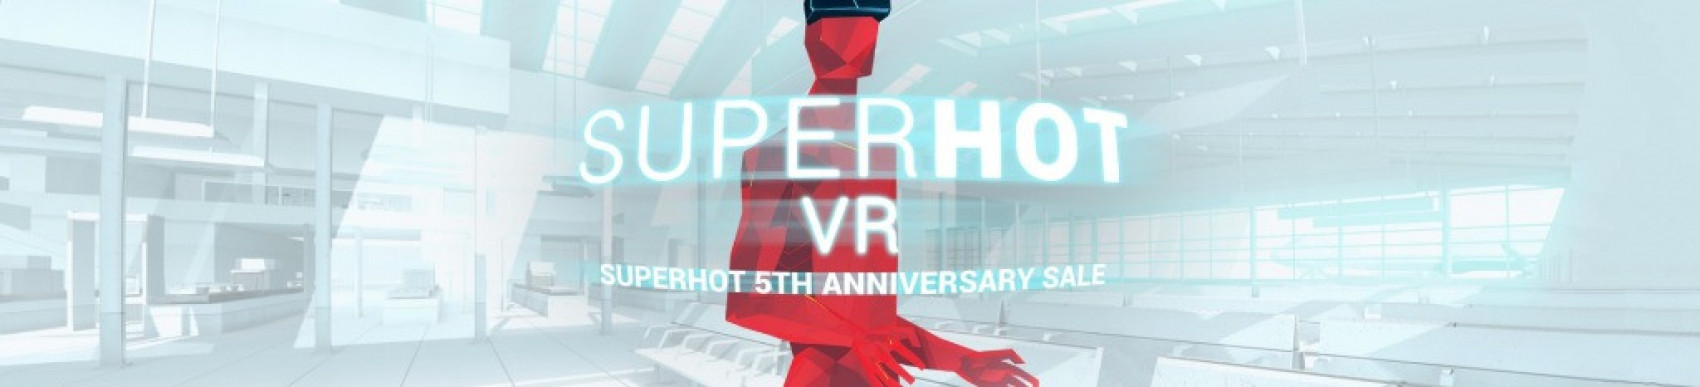 Superhot cumple 5 años, lo celebra con rebajas e informa de que ha vendido más de 1 millón de copias de su versión para Quest